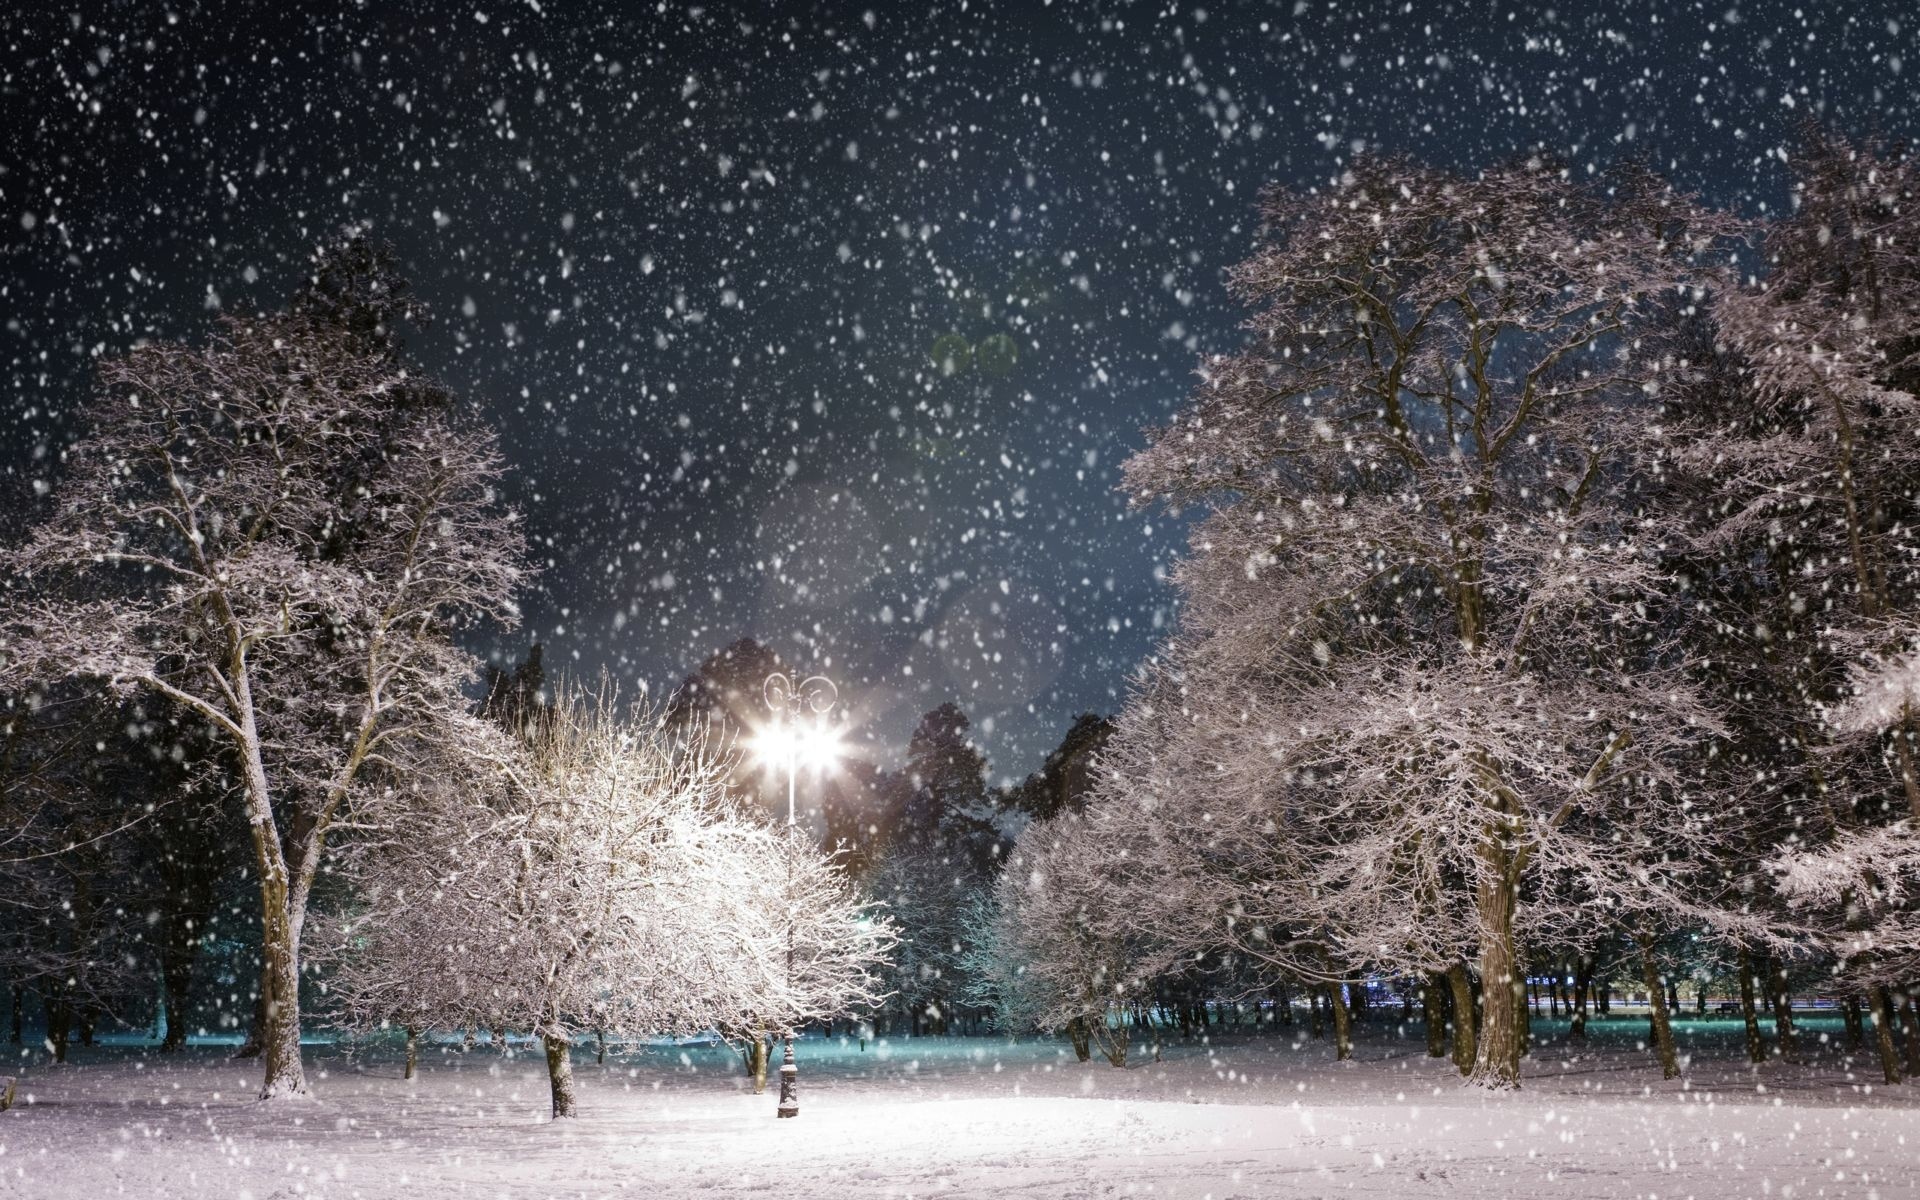 Скачать обои бесплатно Зима, Ночь, Снег, Парк, Дерево, Фотографии, Снегопад, Легкий картинка на рабочий стол ПК